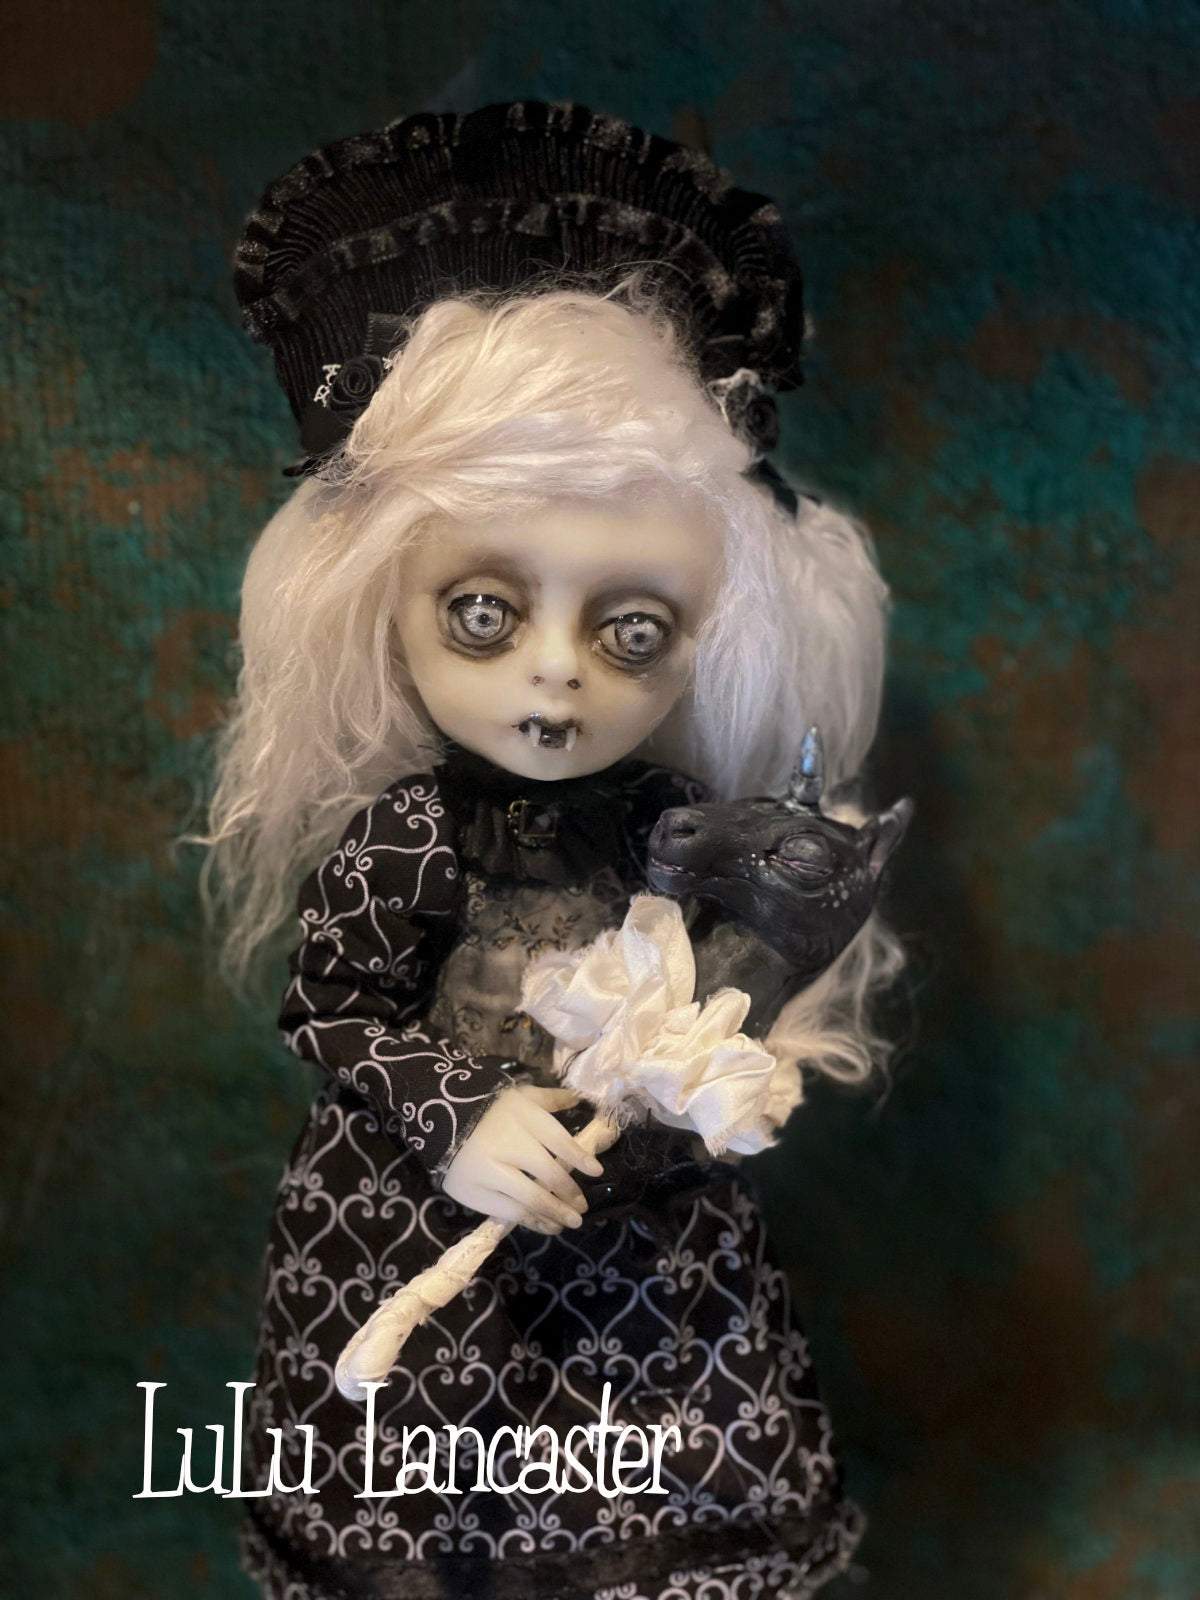 Stella Dark Heart Vampire Original LuLu Lancaster Art Doll